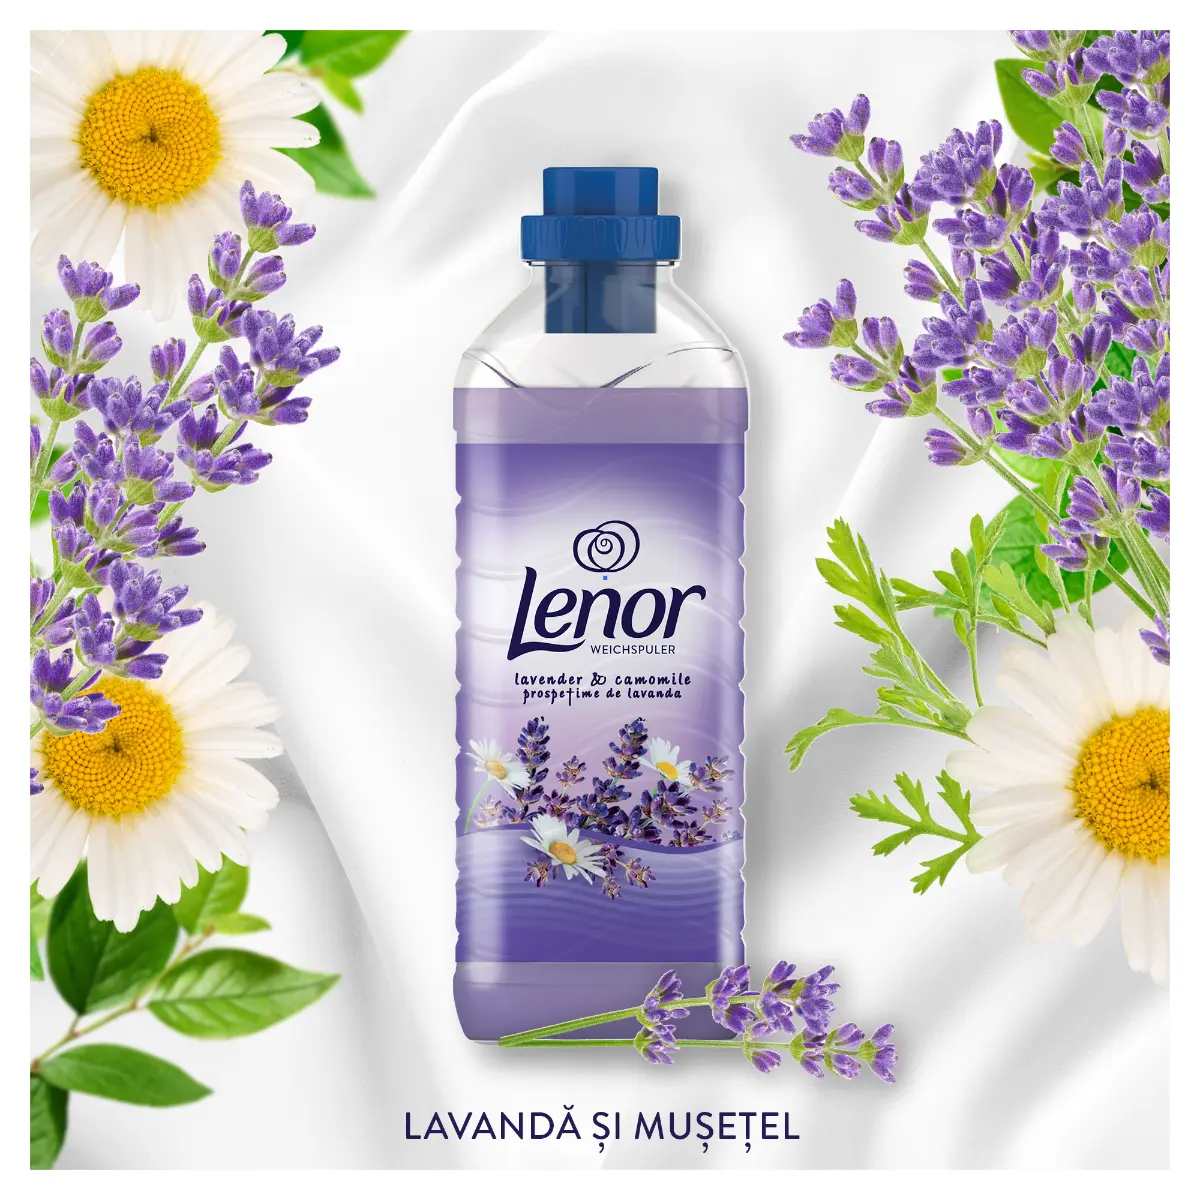 Balsam de rufe Lenor Lavender and Camomille, 1.625 L, 65 spalari